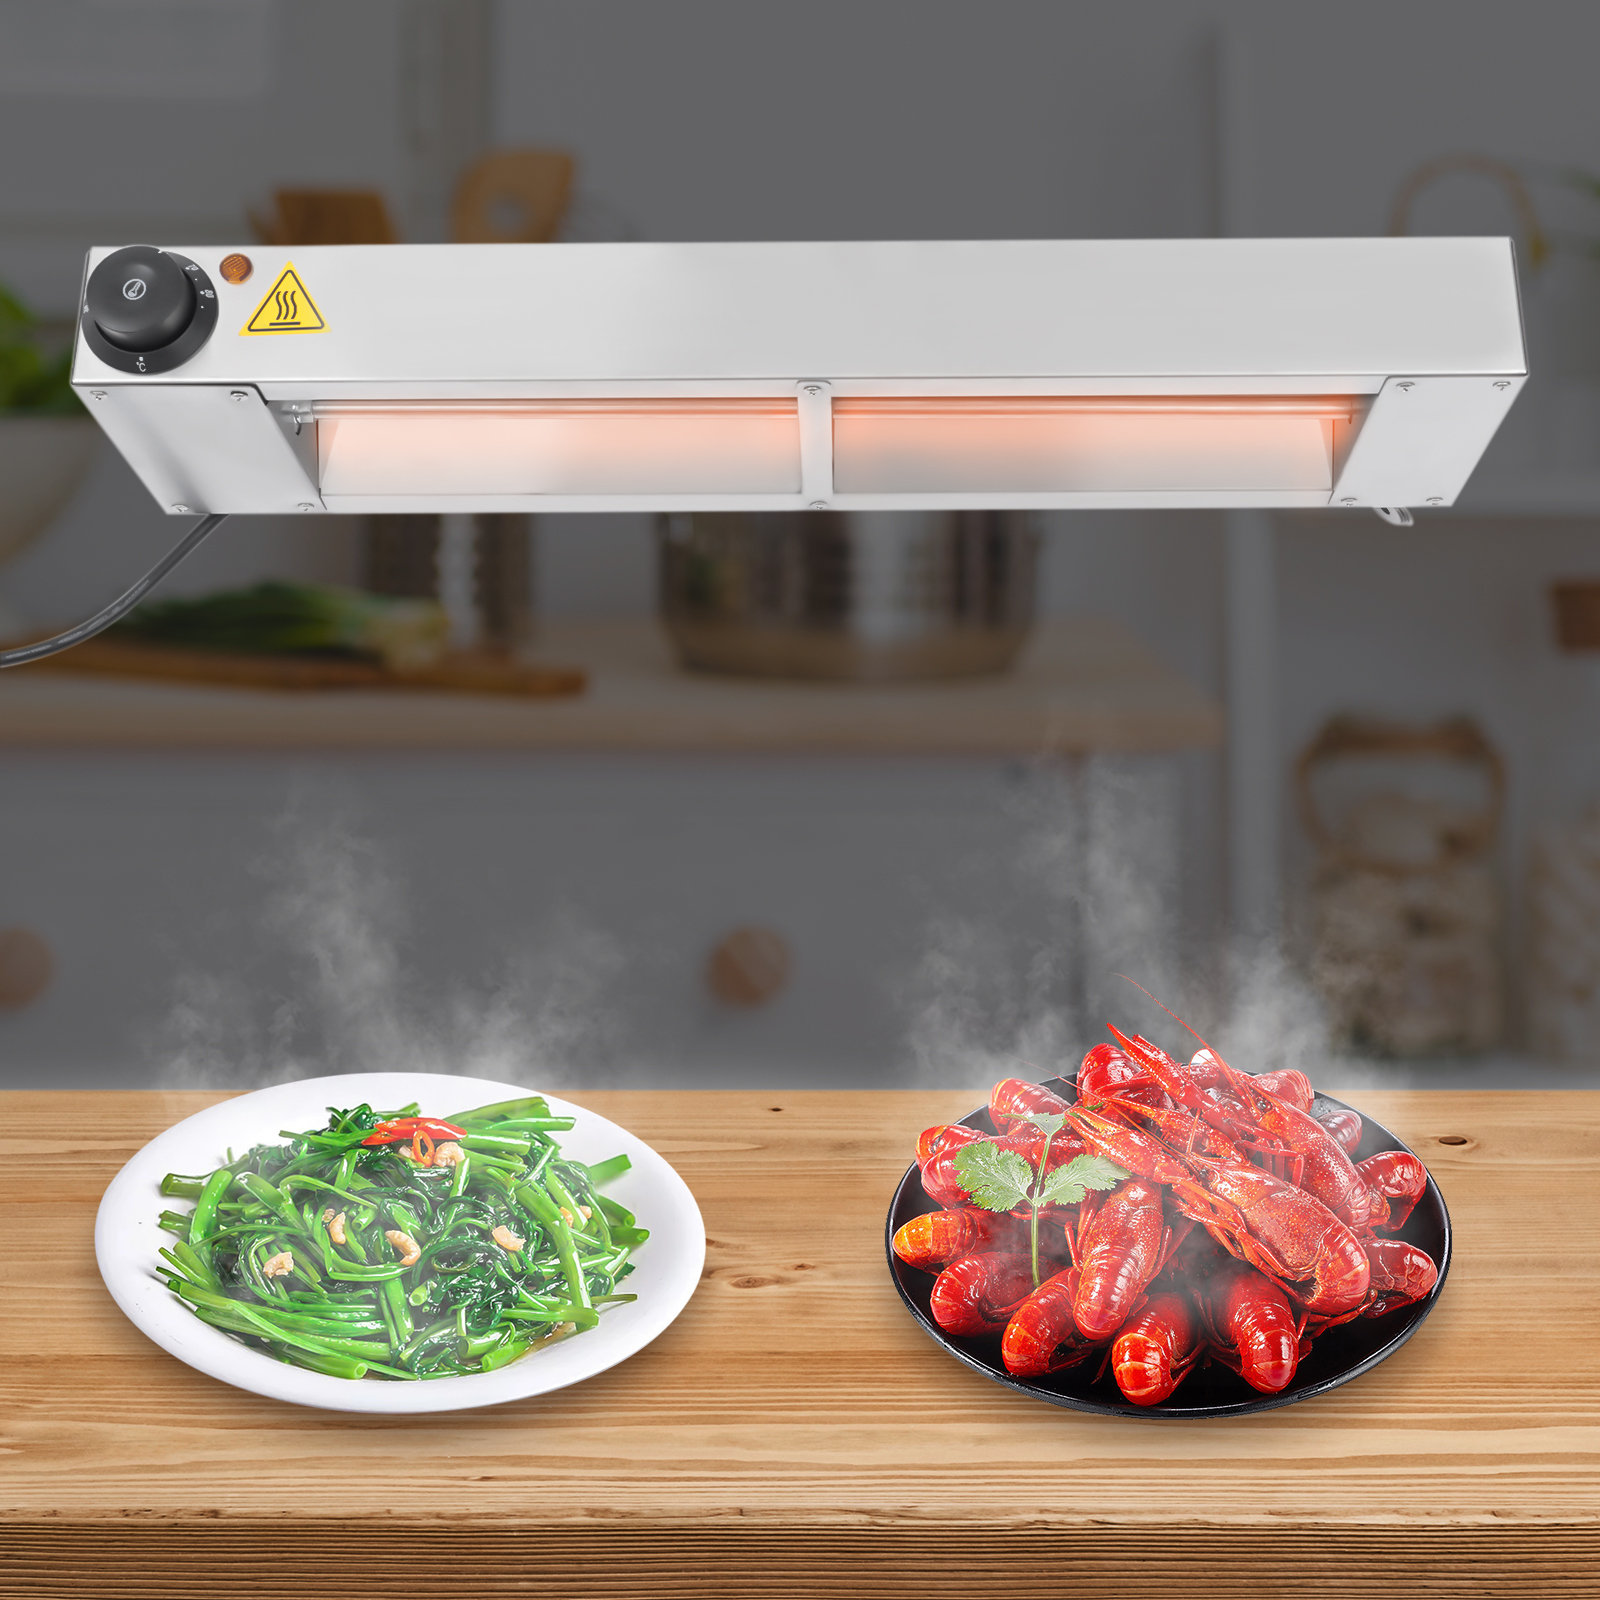 DENFER 24'' 500W Infrared Overhead Food Heat Strips & Warmer Lamp